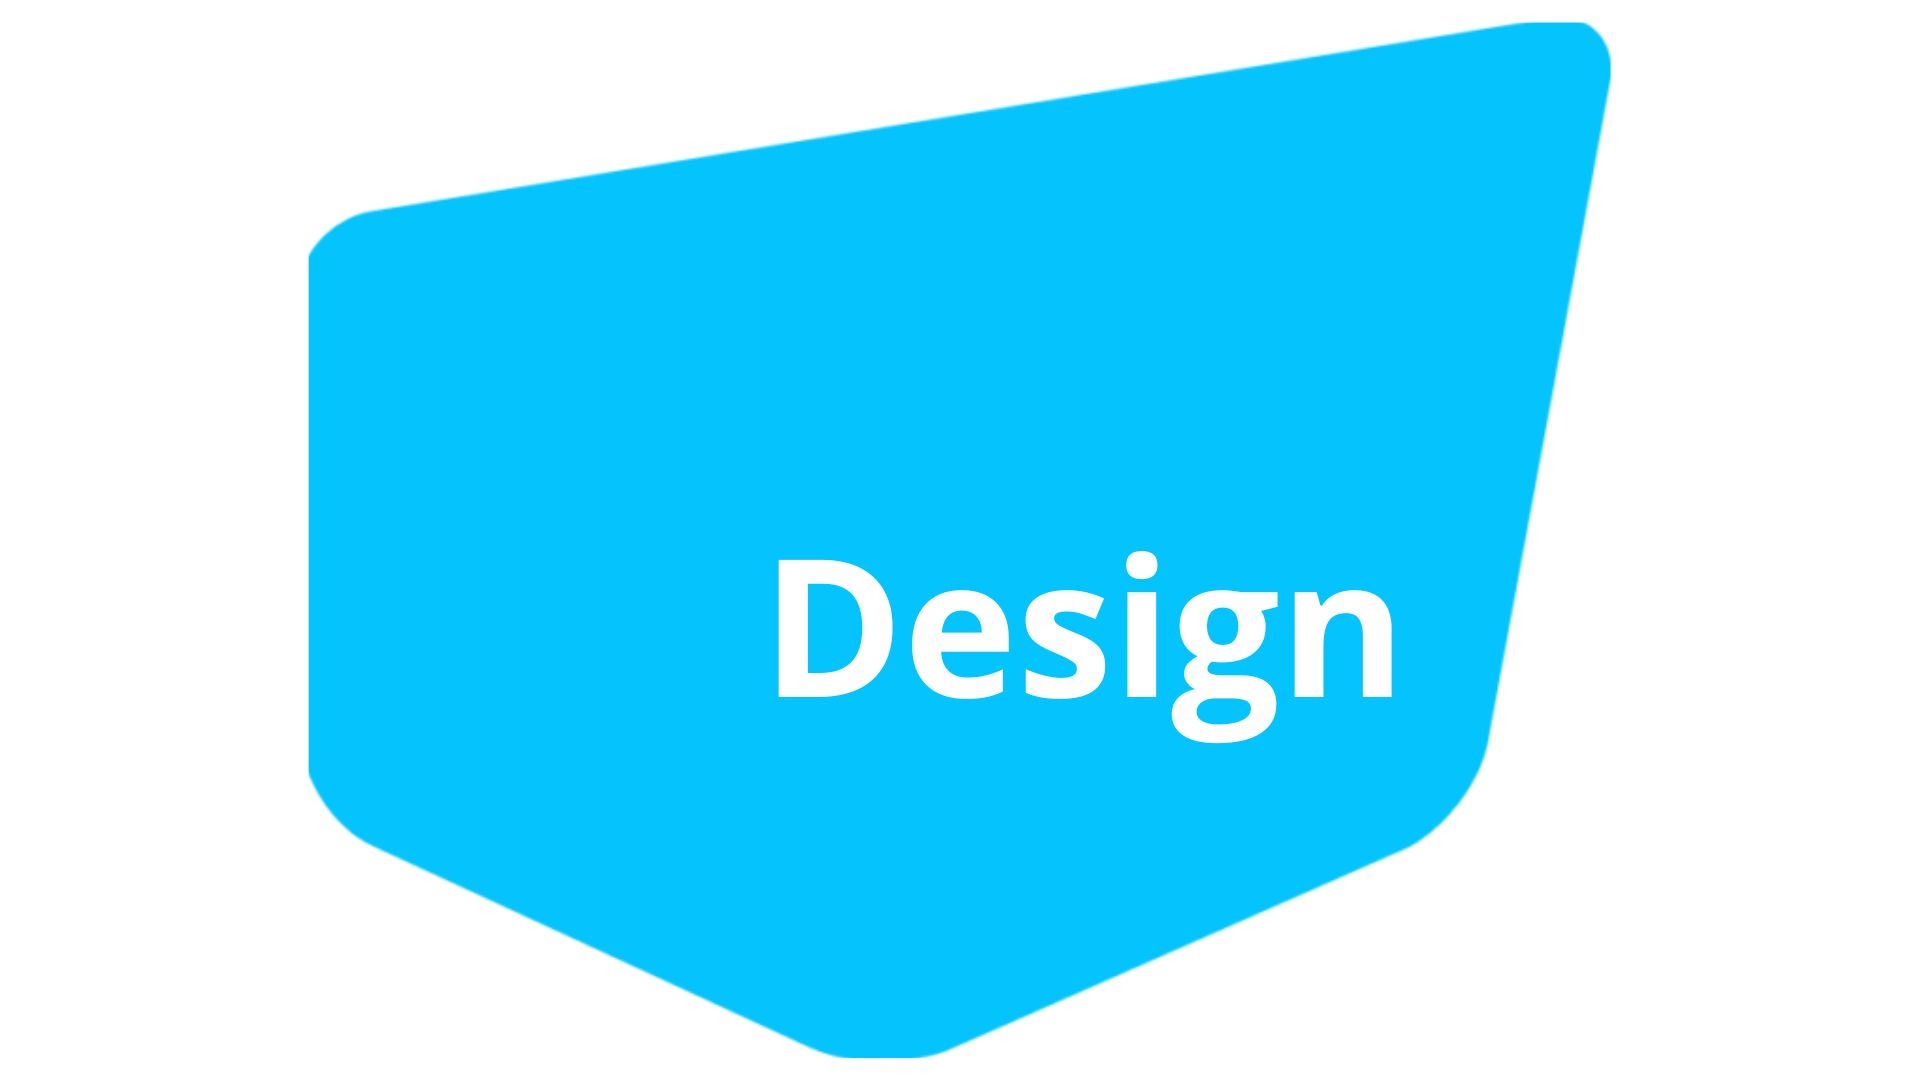 Représentation de la formation : TBA - Design - Sustaining the Creative Vision despite challenges